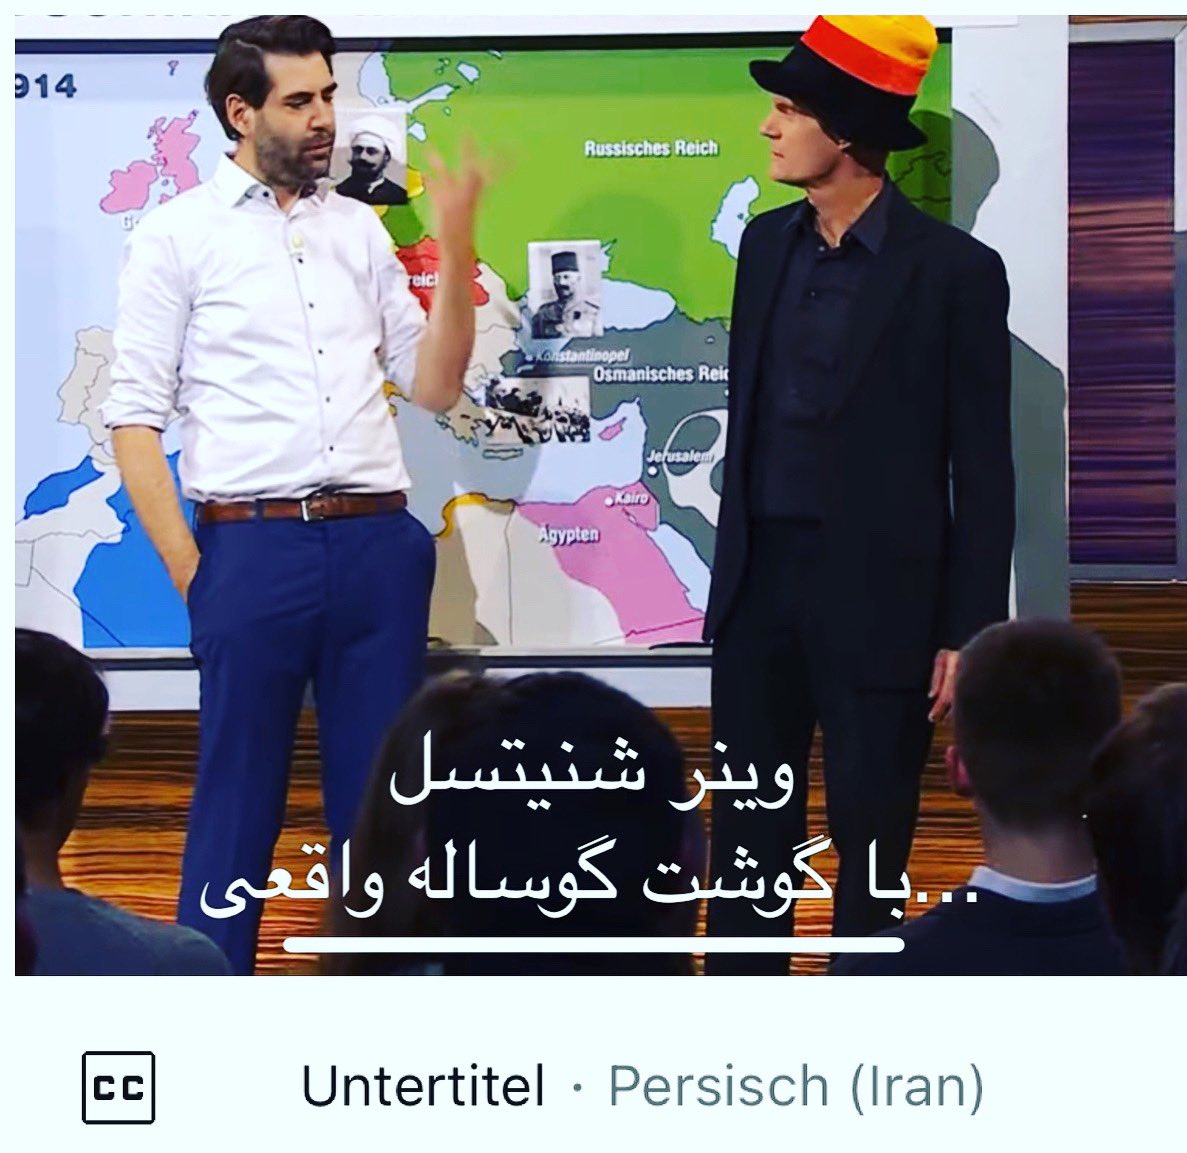 #dieanstalt jetzt auch in voller Länge mit Untertiteln auf YouTube 👉 youtu.be/wFnY8rq0xEw #iranstalt #IranRevolution2022